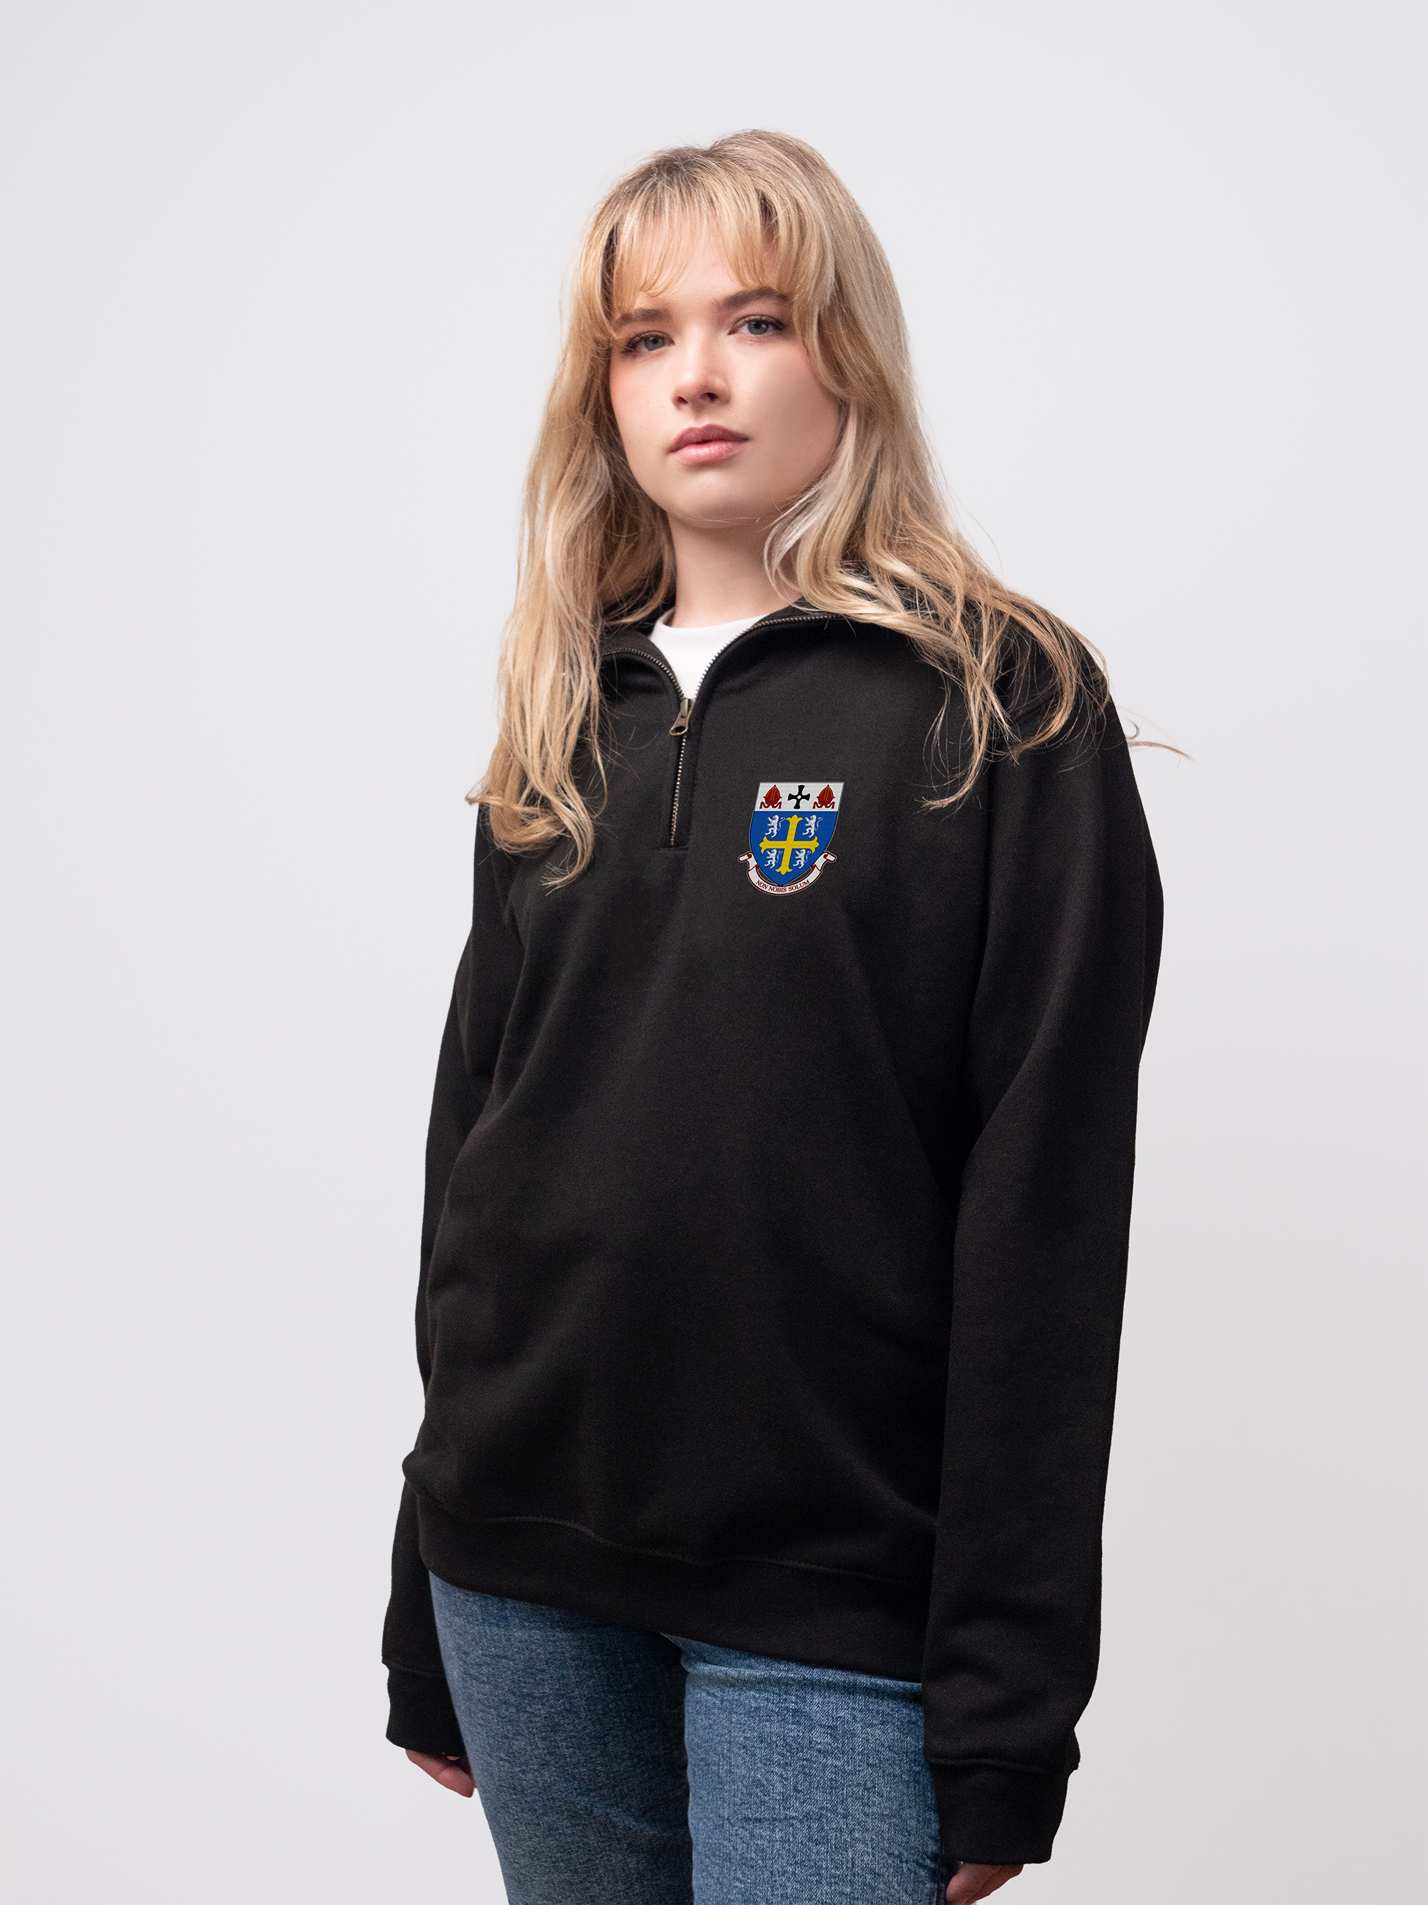 University College student wearing a black 1/4 zip sweatshirt 